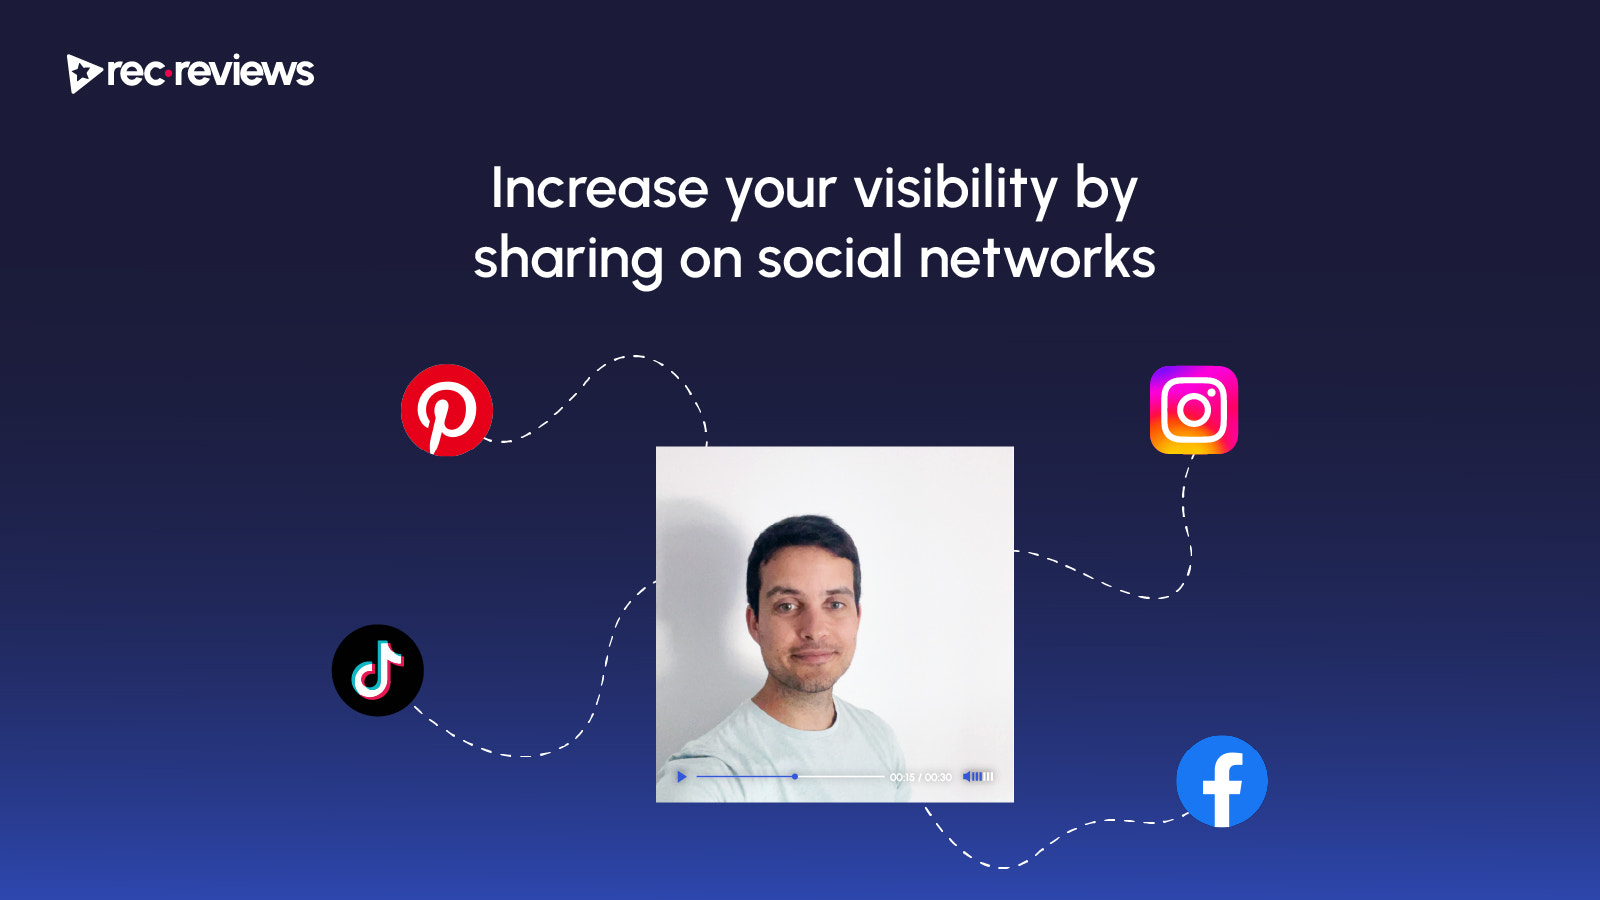 Aumenta tu visibilidad compartiendo en redes sociales